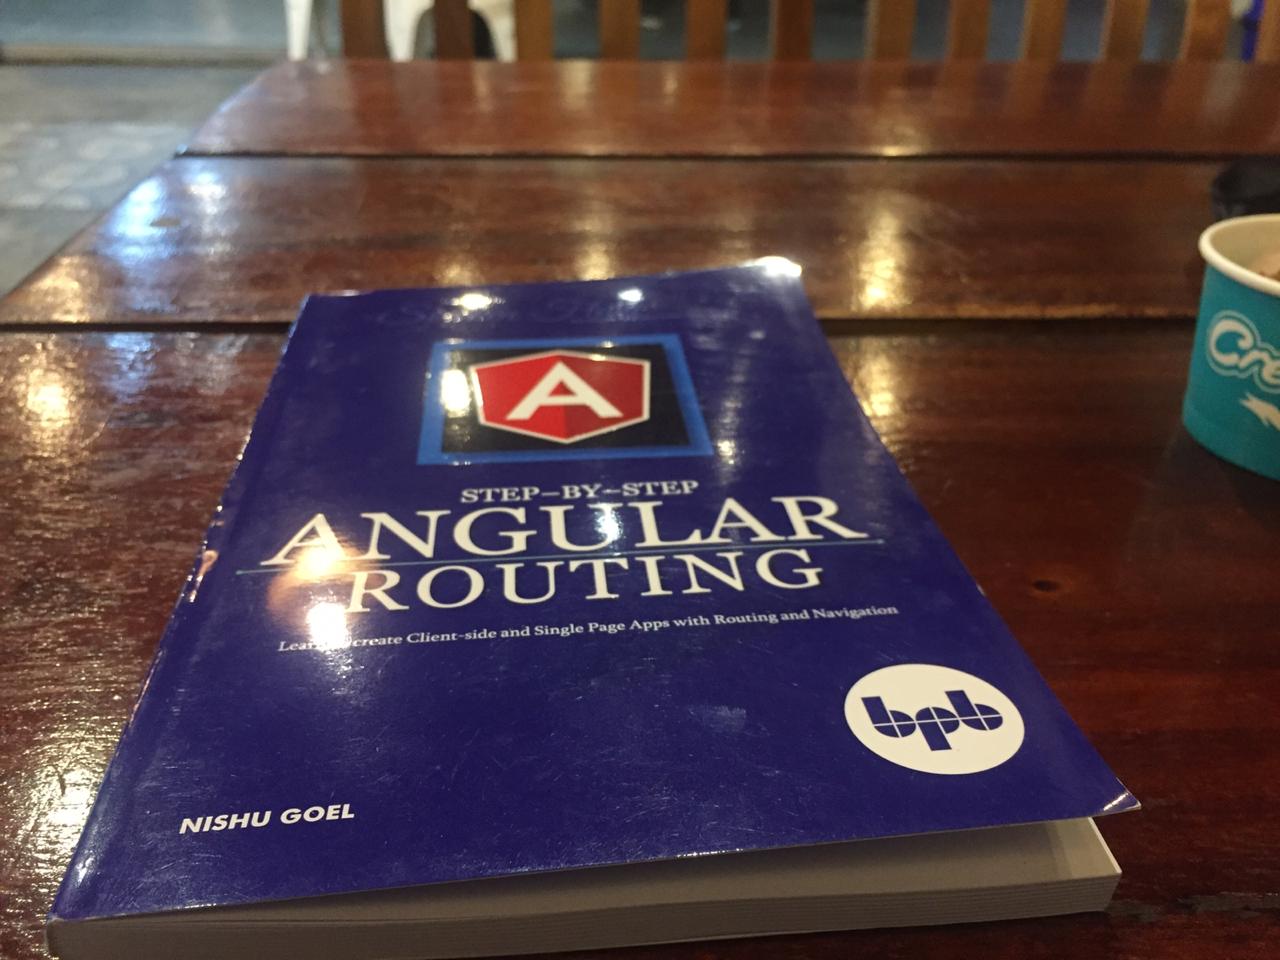 کتاب Angular Routing on a table.